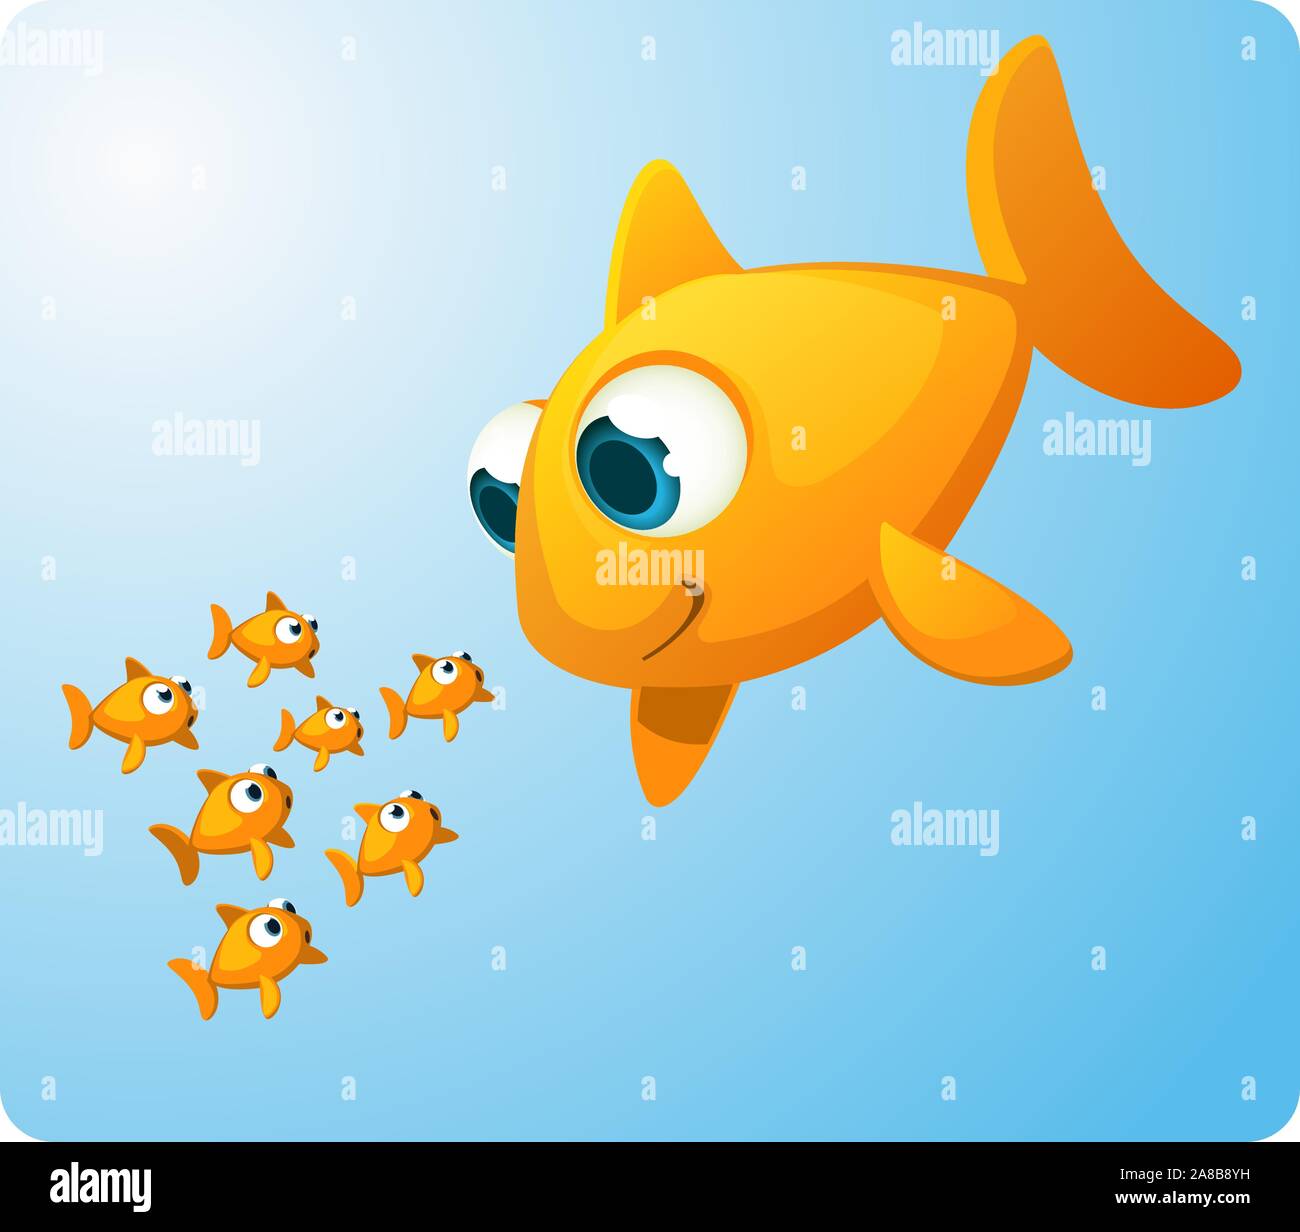 Gruppe von Goldfisch, der Blick auf eine riesige Goldfische überrascht an, sie lächelt. Sieben (7) überrascht und erstaunt, kleine Fische starrte auf eine gleichwertige, aber enormen fi Stock Vektor